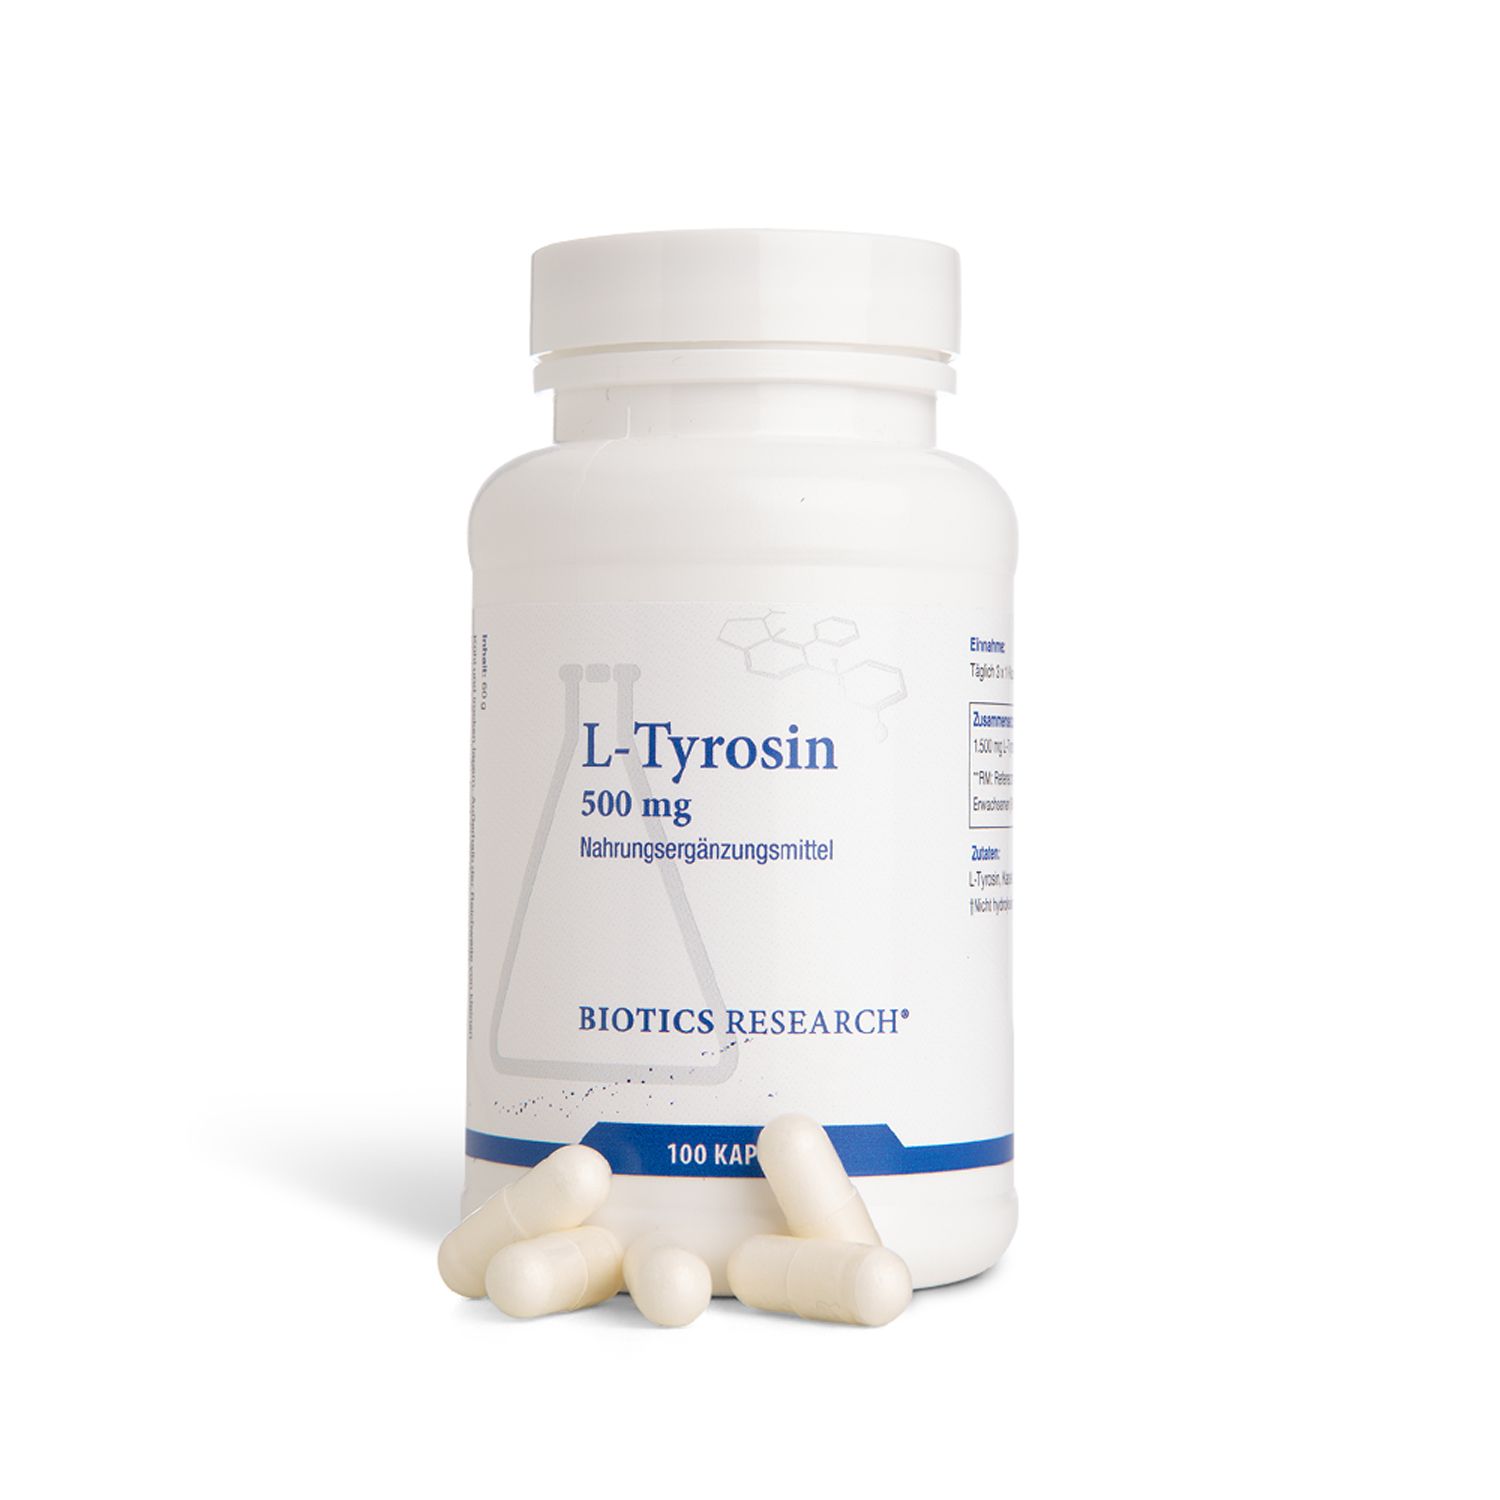 BIOTICS® RESEARCH L-Tyrosin